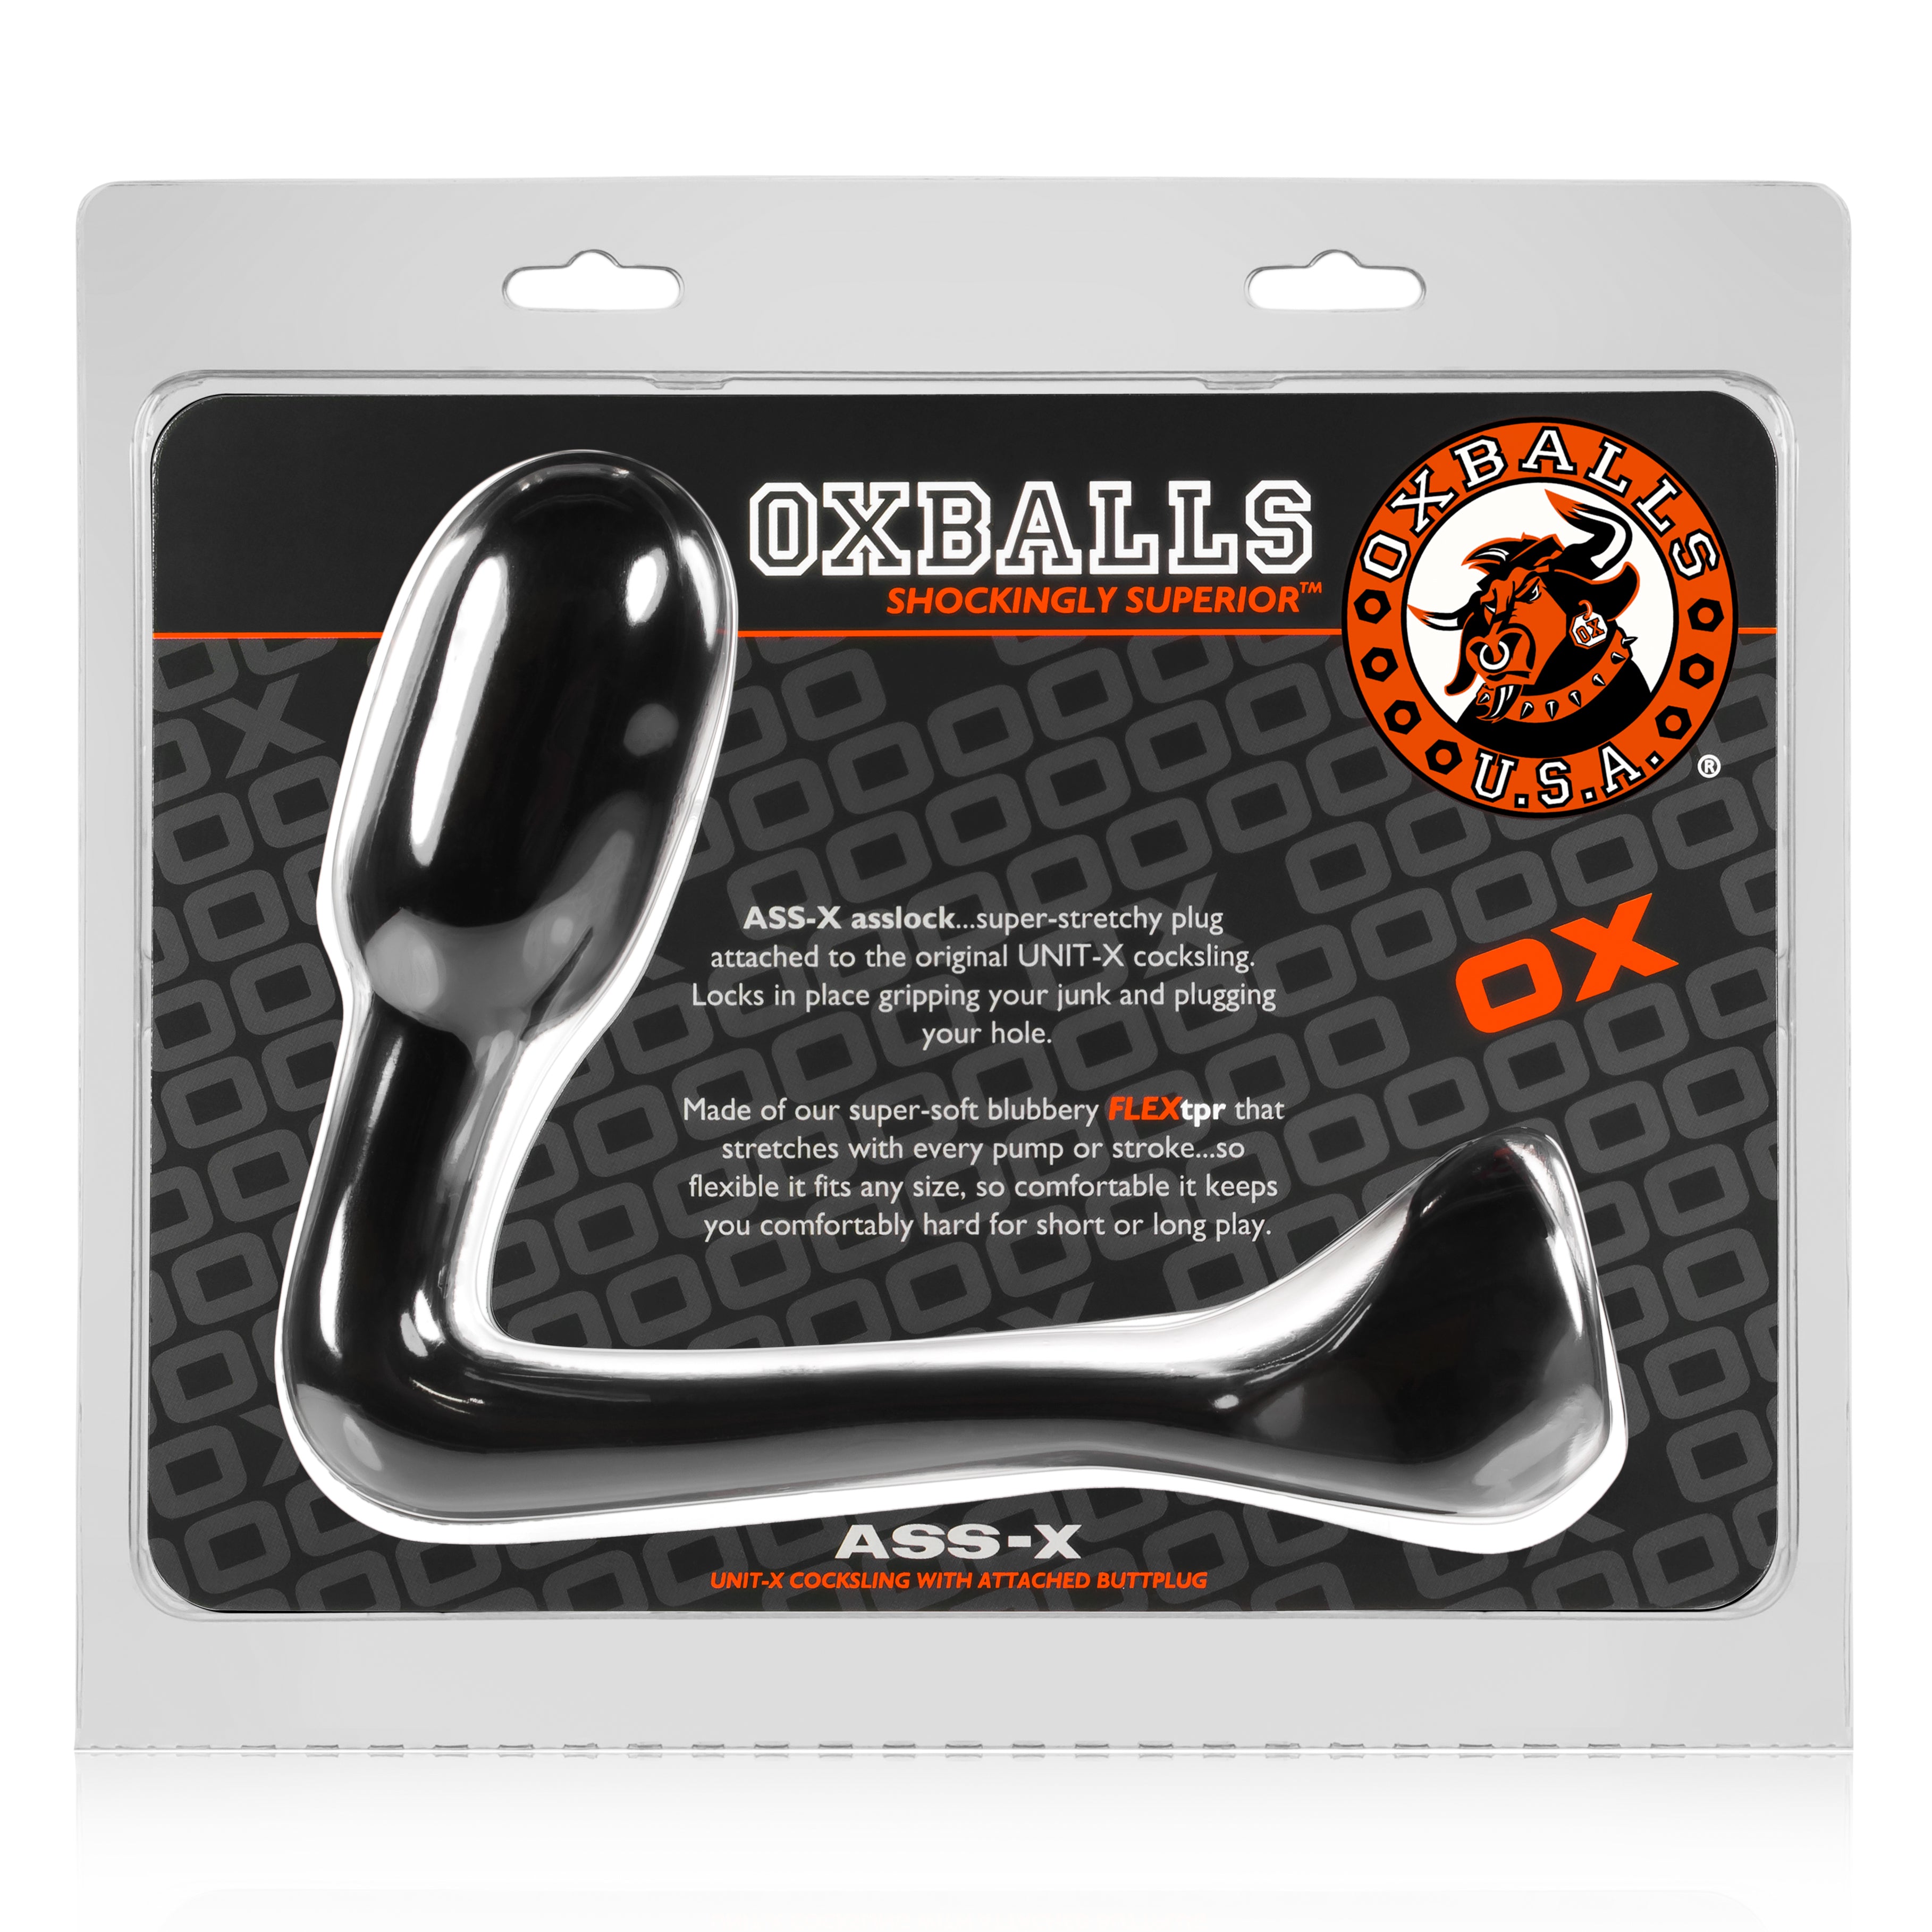 Oxballs Ass-X Asslock